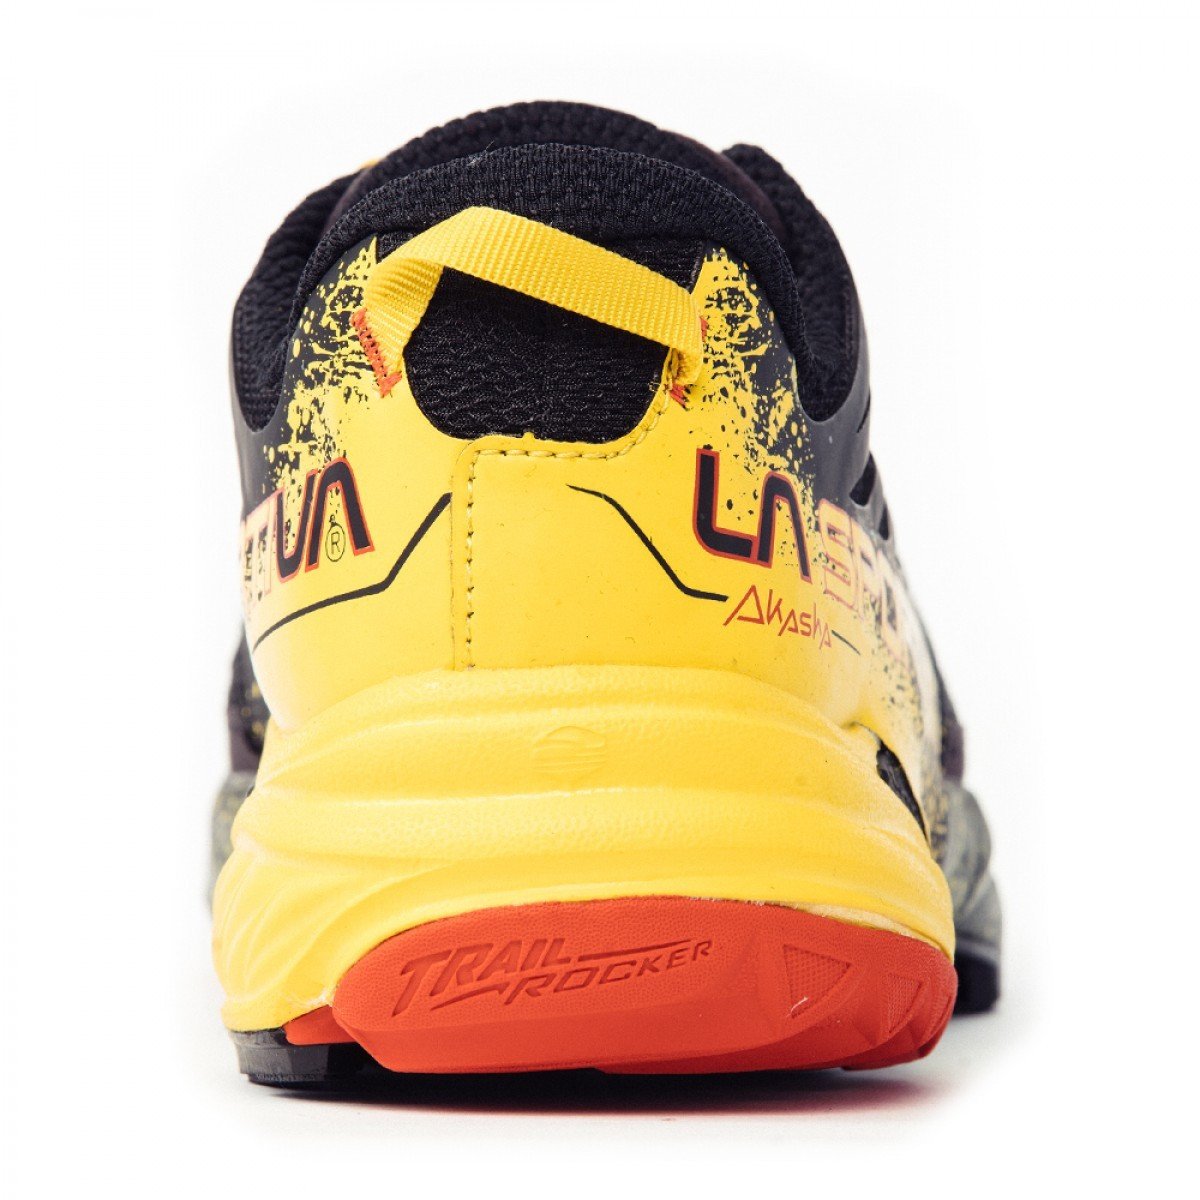 La Sportiva Akasha running shoe, view of the heel